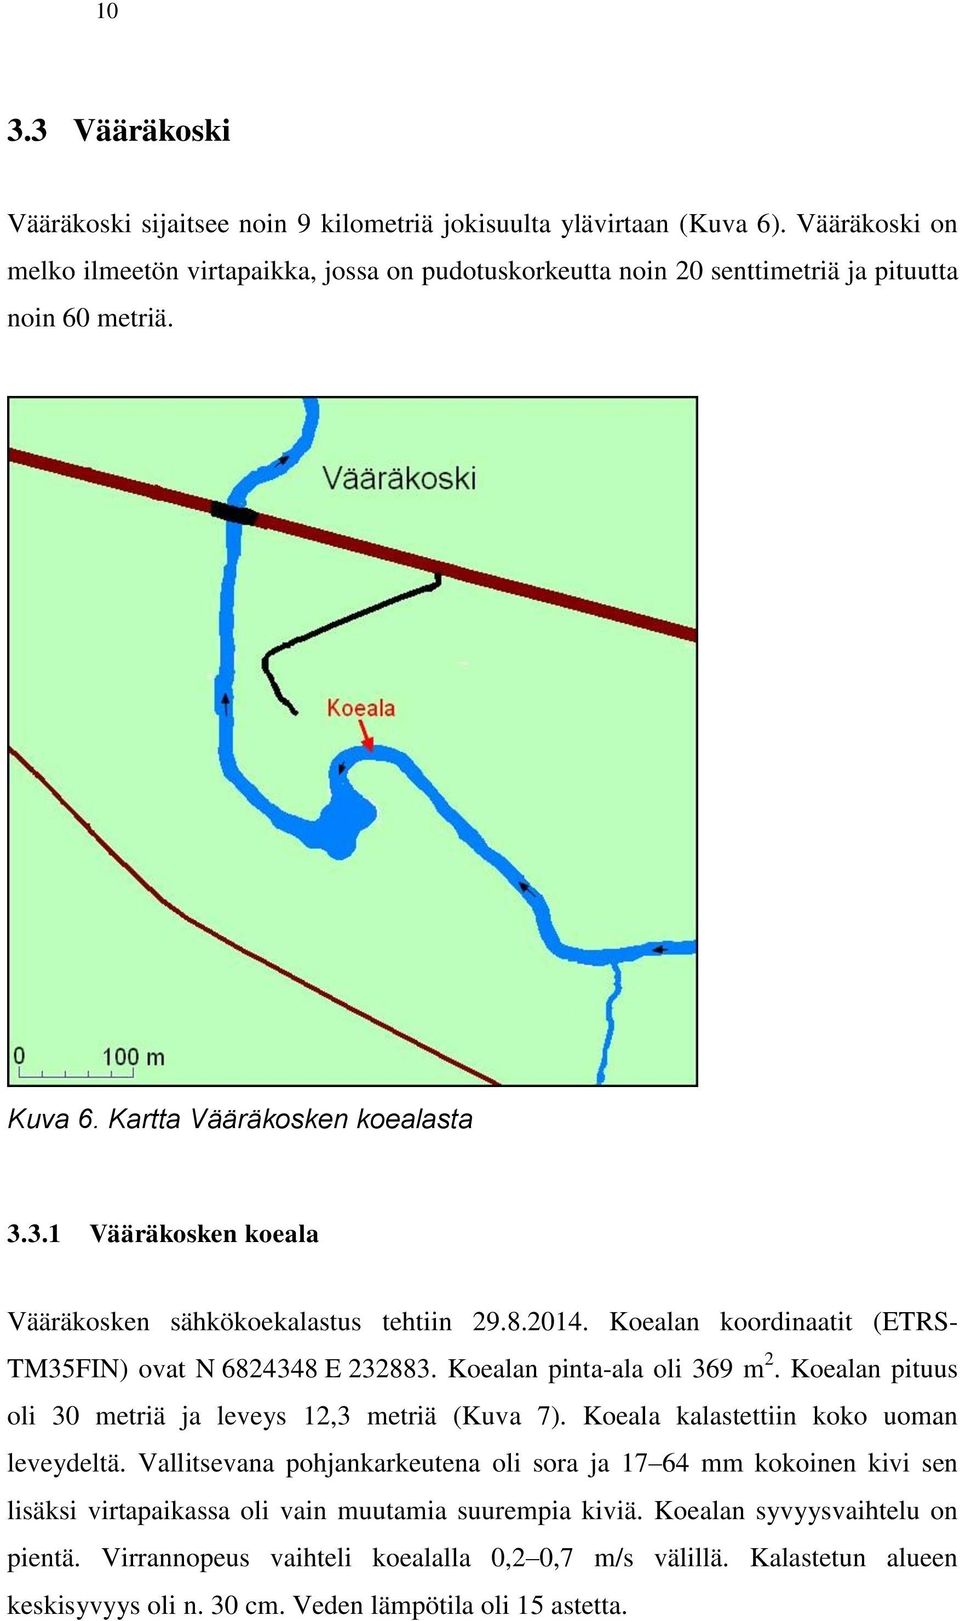 3.1 Vääräkosken koeala Vääräkosken sähkökoekalastus tehtiin 29.8.2014. Koealan koordinaatit (ETRS- TM35FIN) ovat N 6824348 E 232883. Koealan pinta-ala oli 369 m 2.